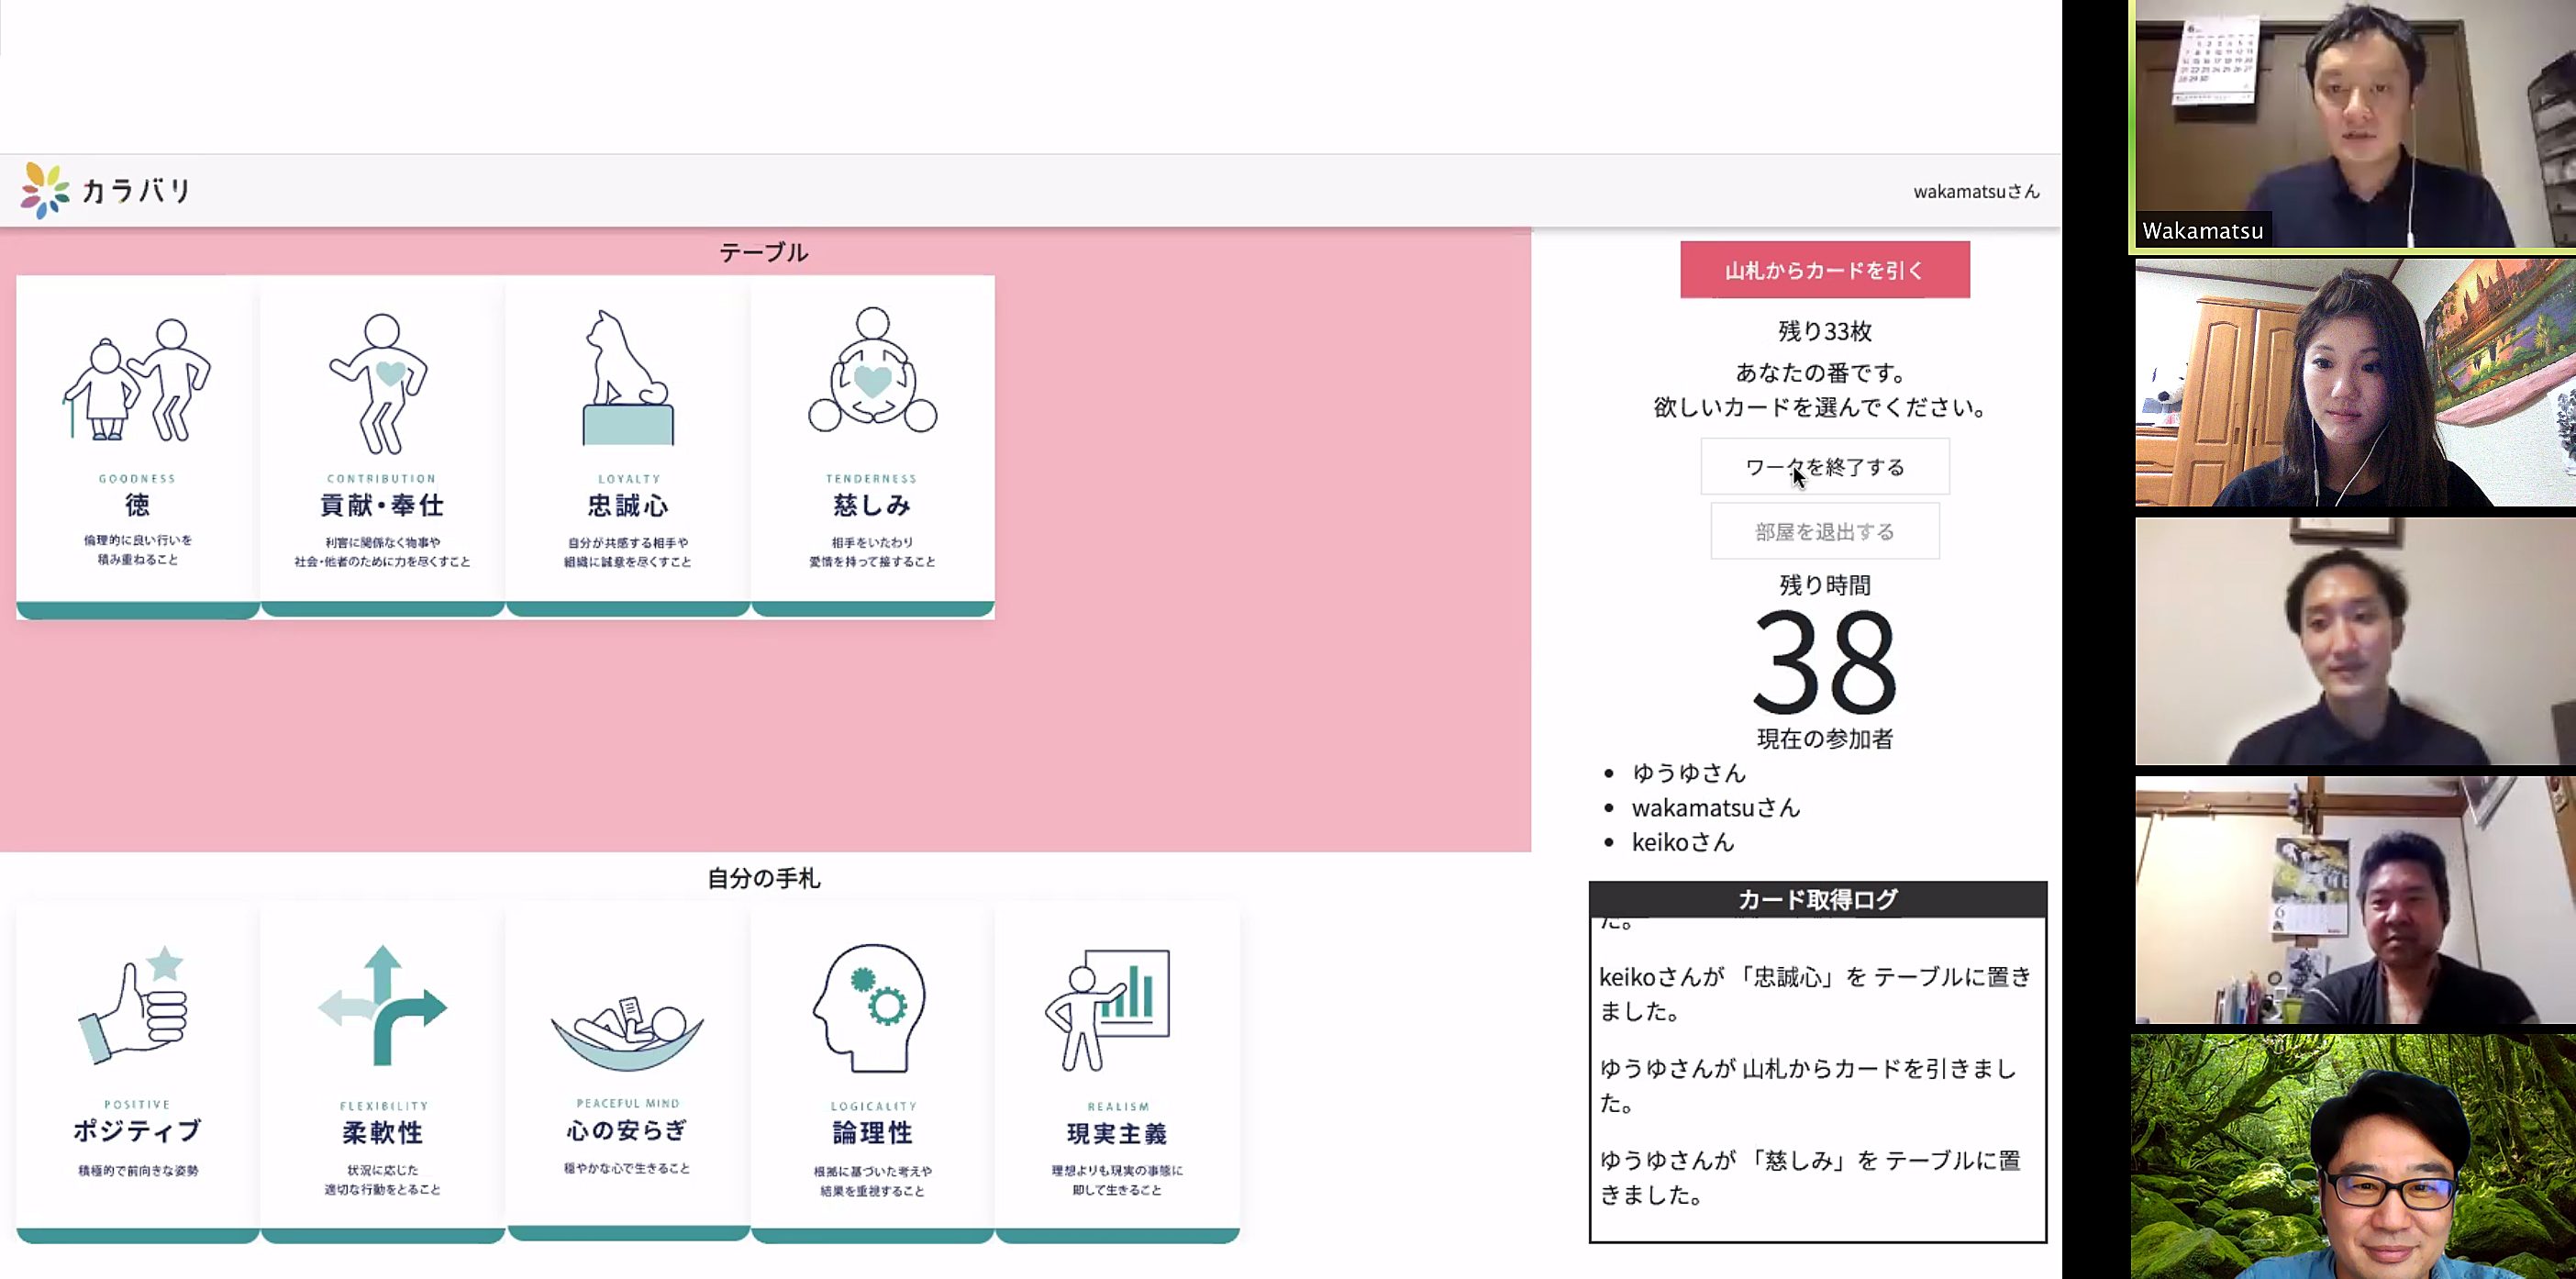 日本初 オンライン上で出来る価値観共有カードゲームb版がリリース 株式会社color Variationのプレスリリース